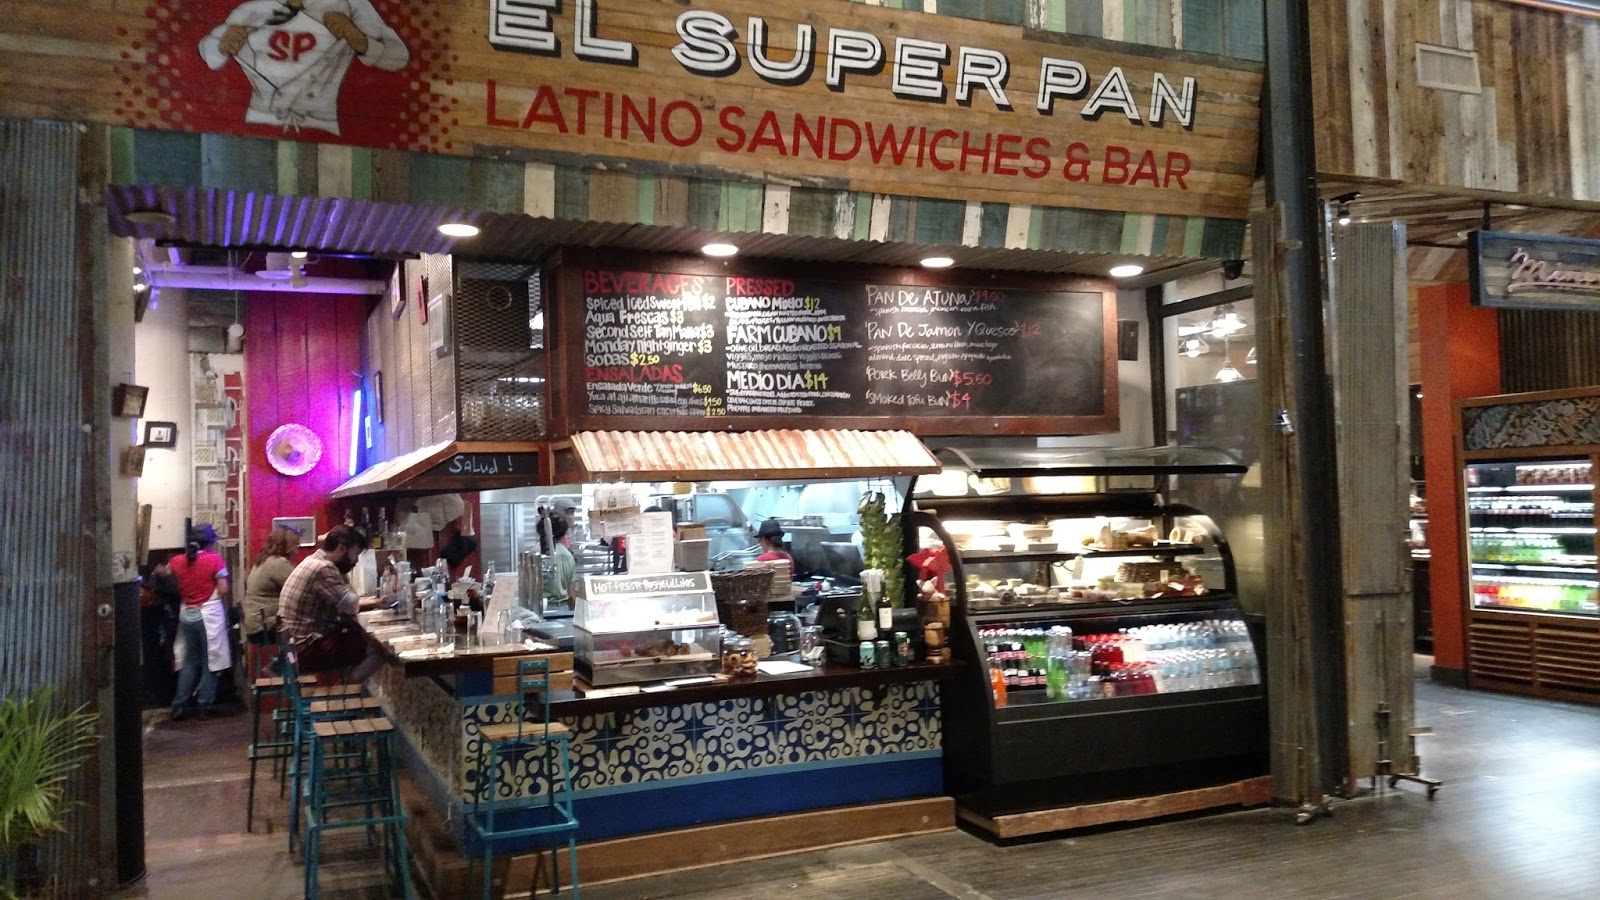 el super pan latino kitchen and bar photos